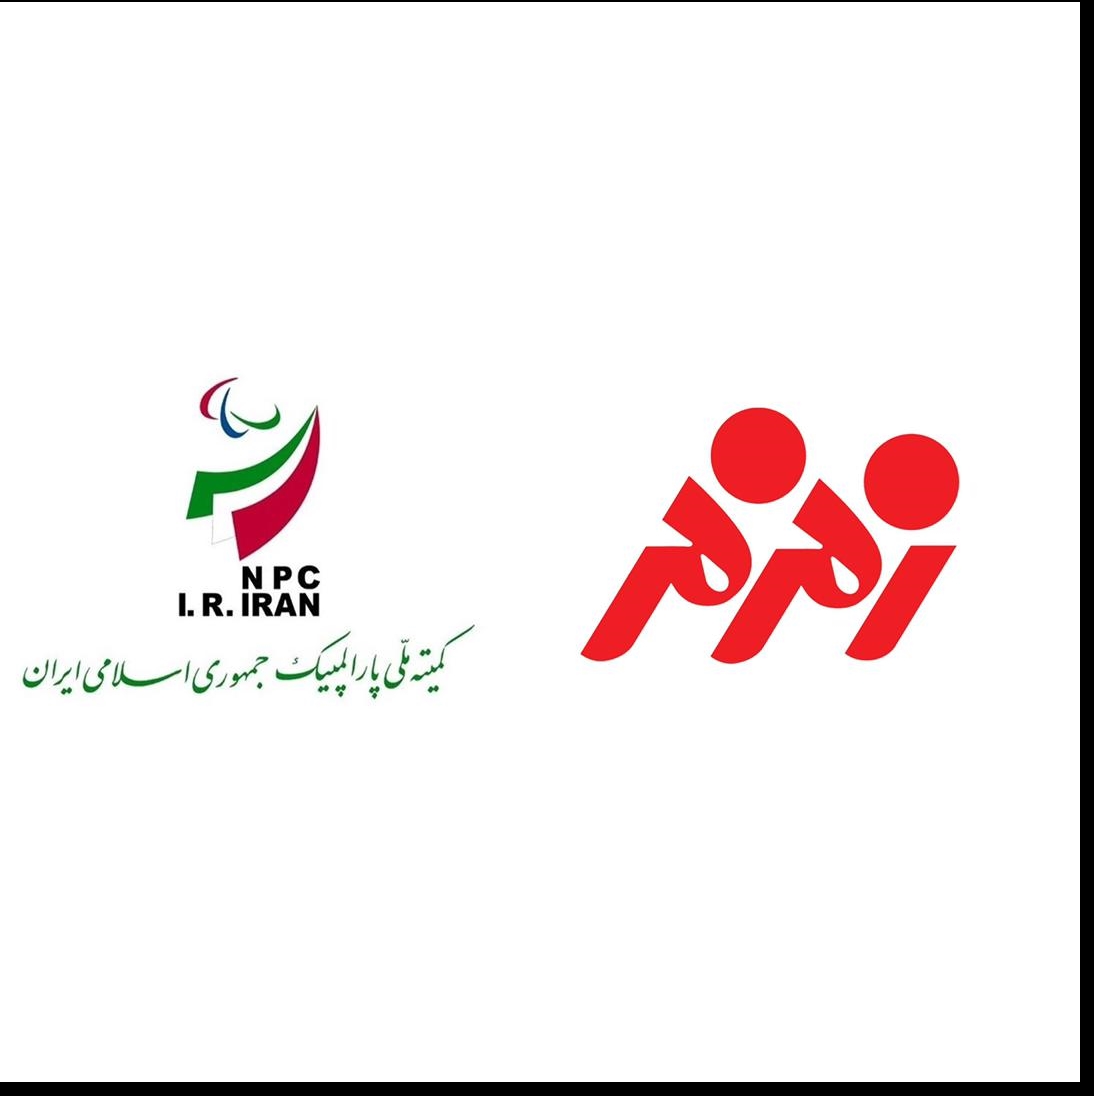 زمزم تنها شرکت ایرانی در بین ۵۰۰ شرکت بزرگ حامی پارالمپیک در جهان